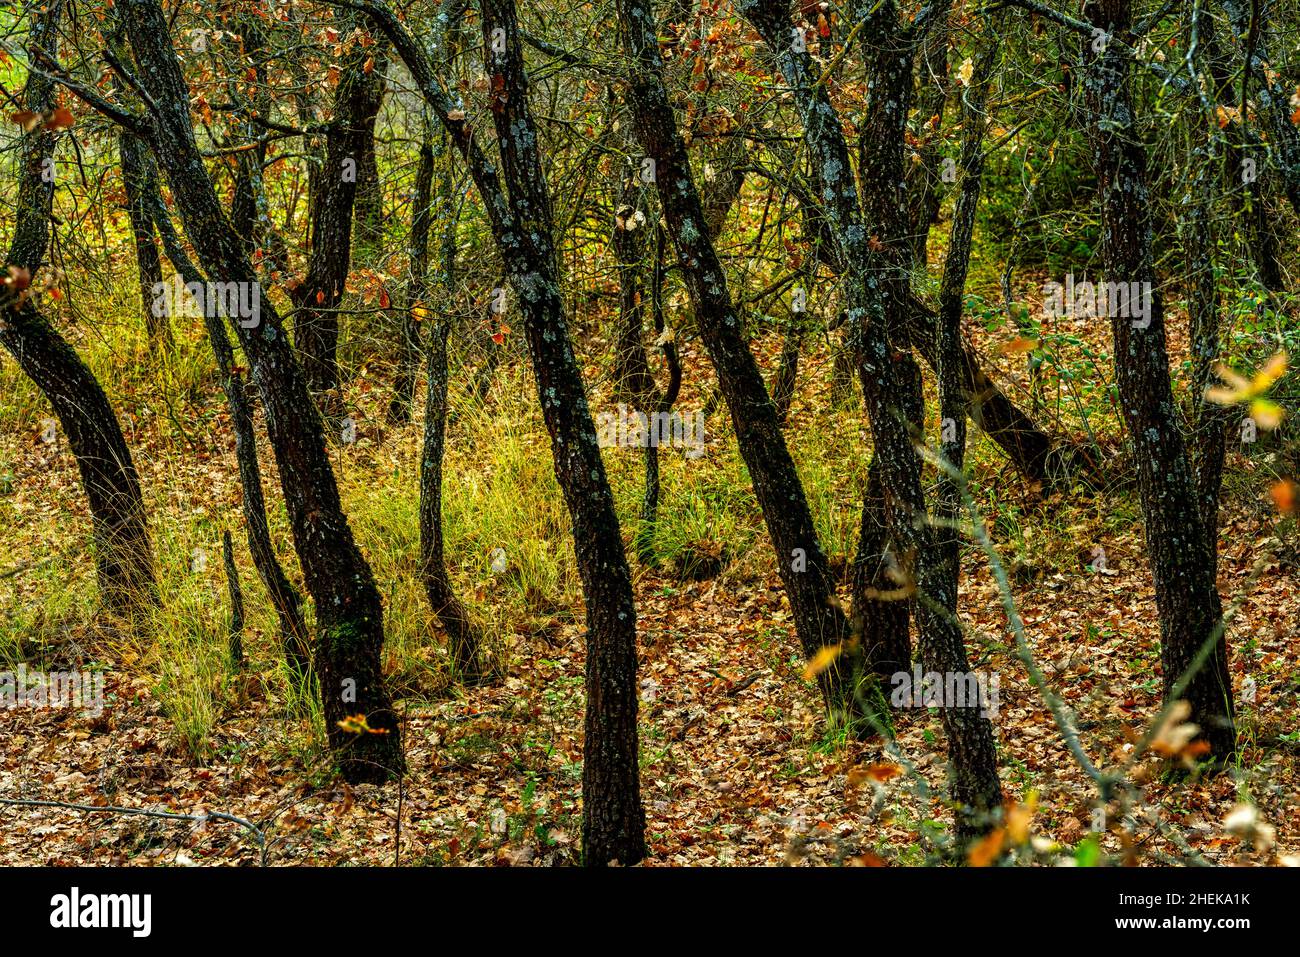 Junger Eichenwald mit dem Boden bedeckt mit abgestorbenen Blättern. Abruzzen, Italien, Europa Stockfoto